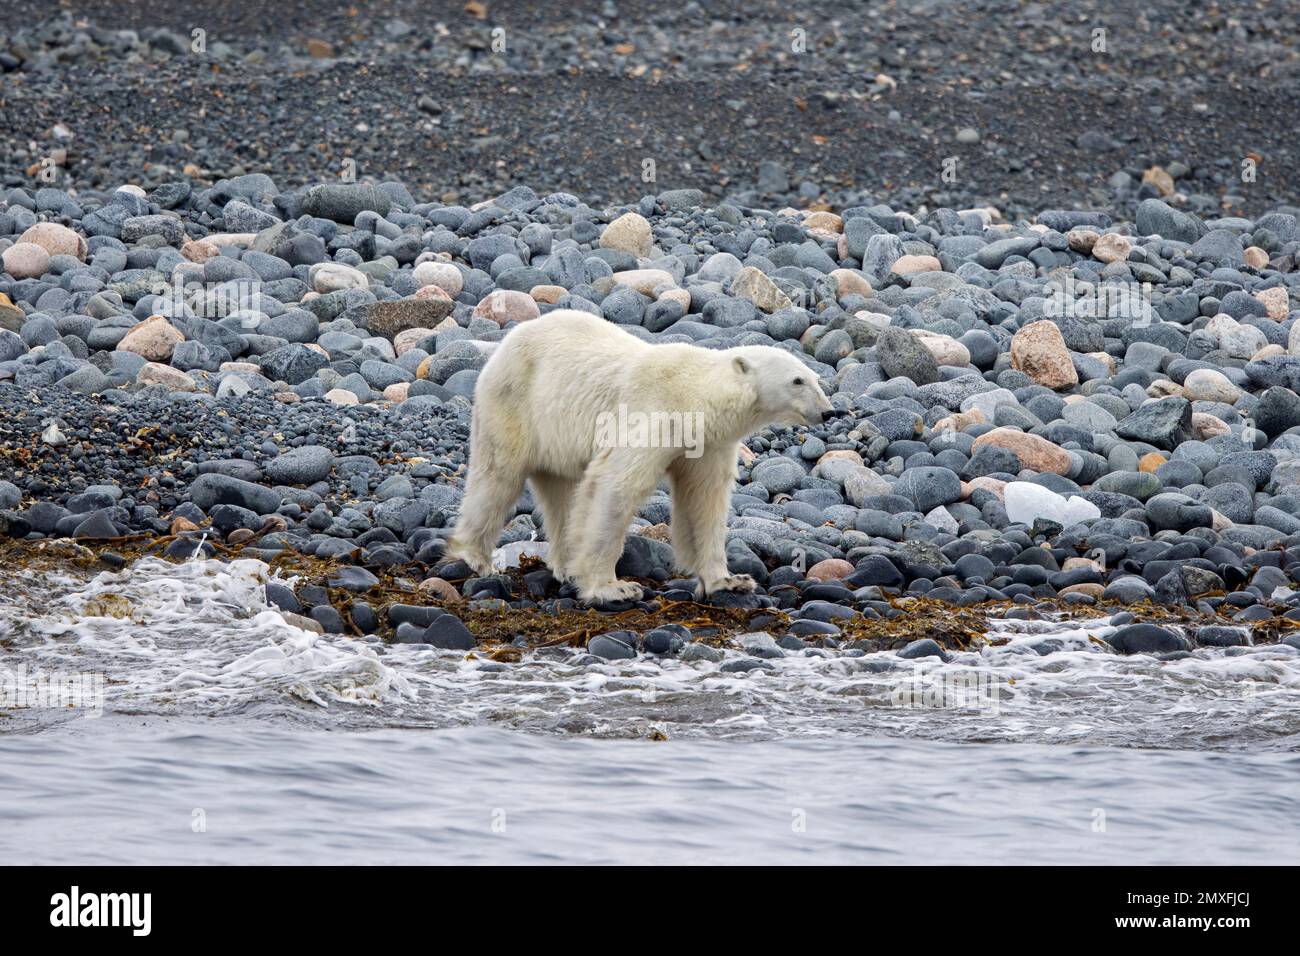 Lone skinny e l'orso polare emaciato (Ursus maritimus) foraging sulla spiaggia di ghiaia lungo la costa di Svalbard in estate, Spitsbergen, Norvegia Foto Stock